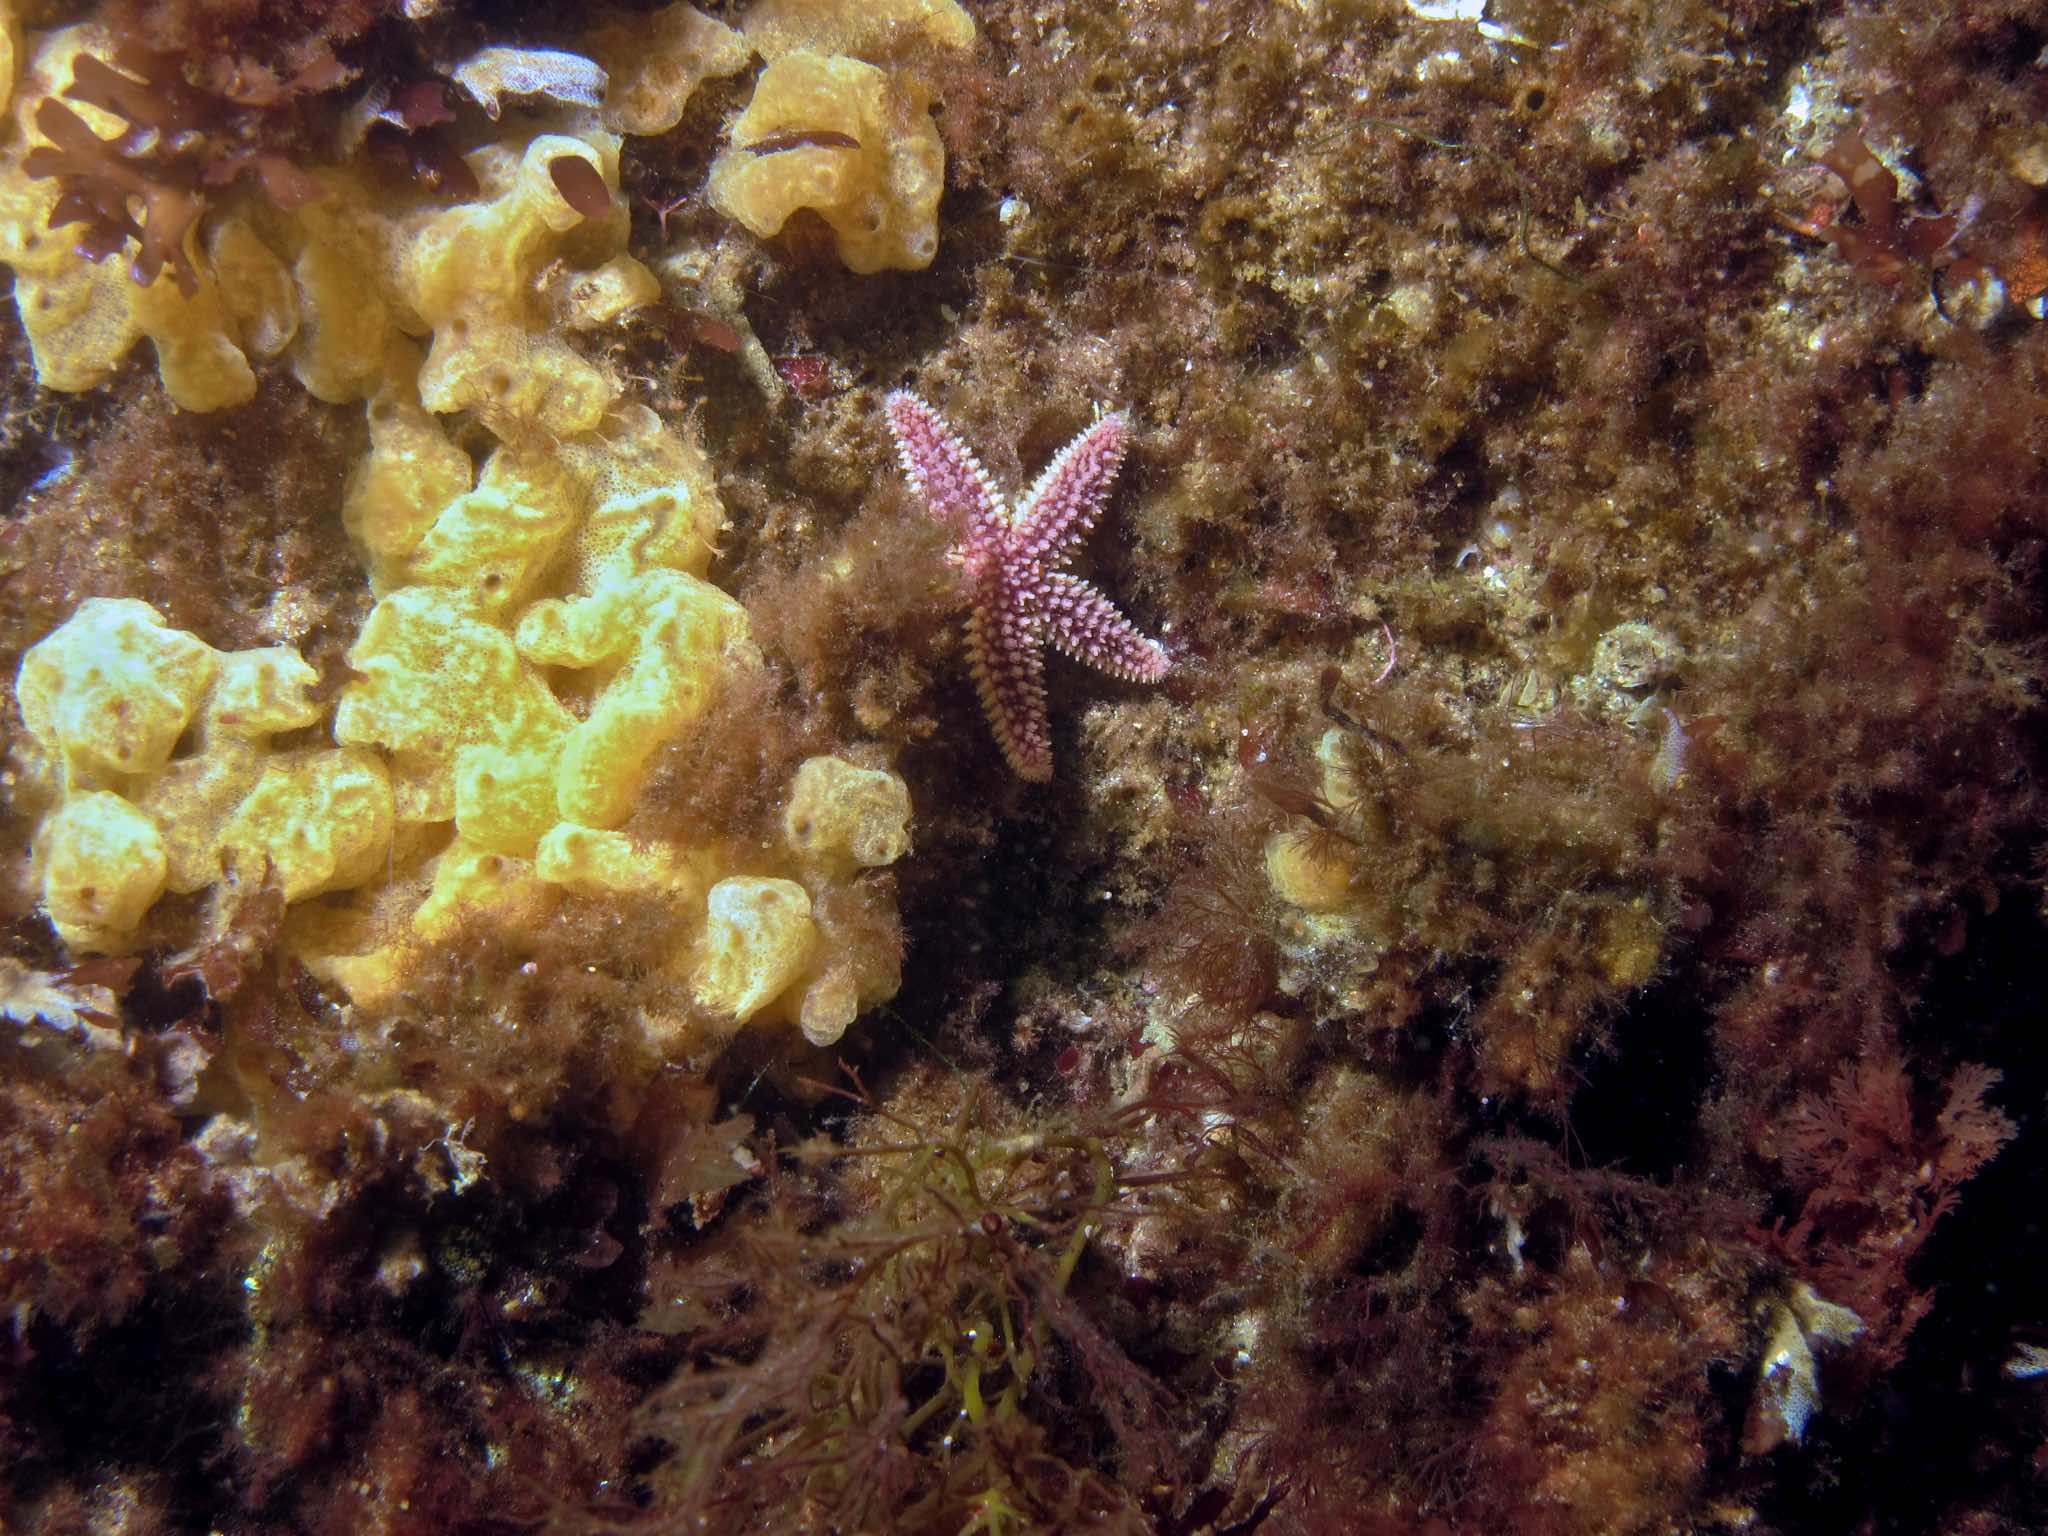 Starfish and Algae